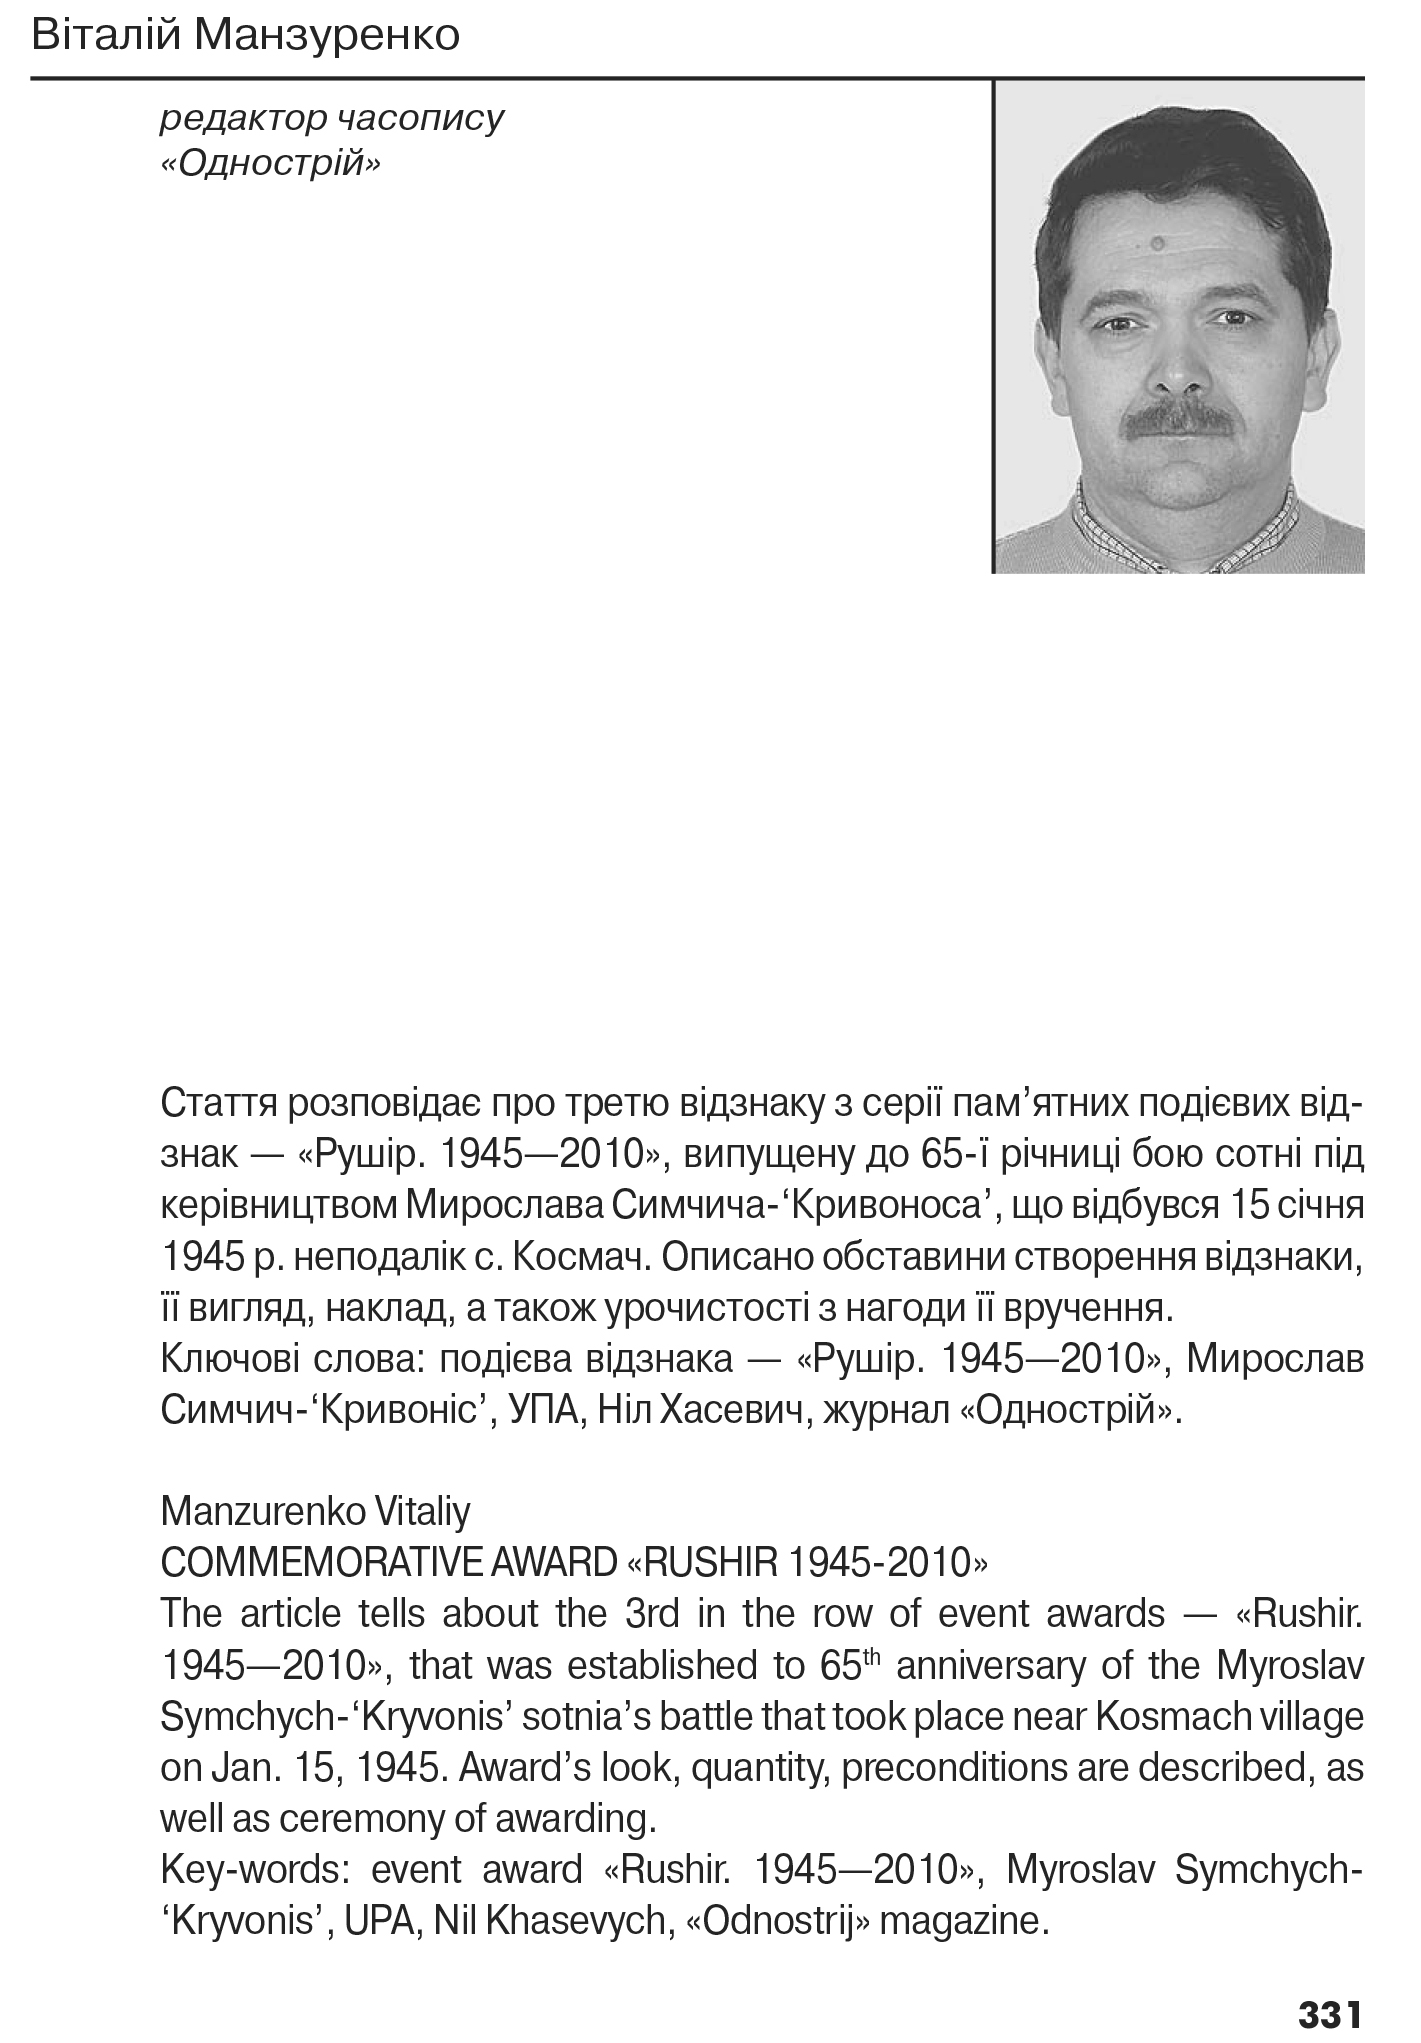 Український визвольний рух №15, ст. 331 - 338